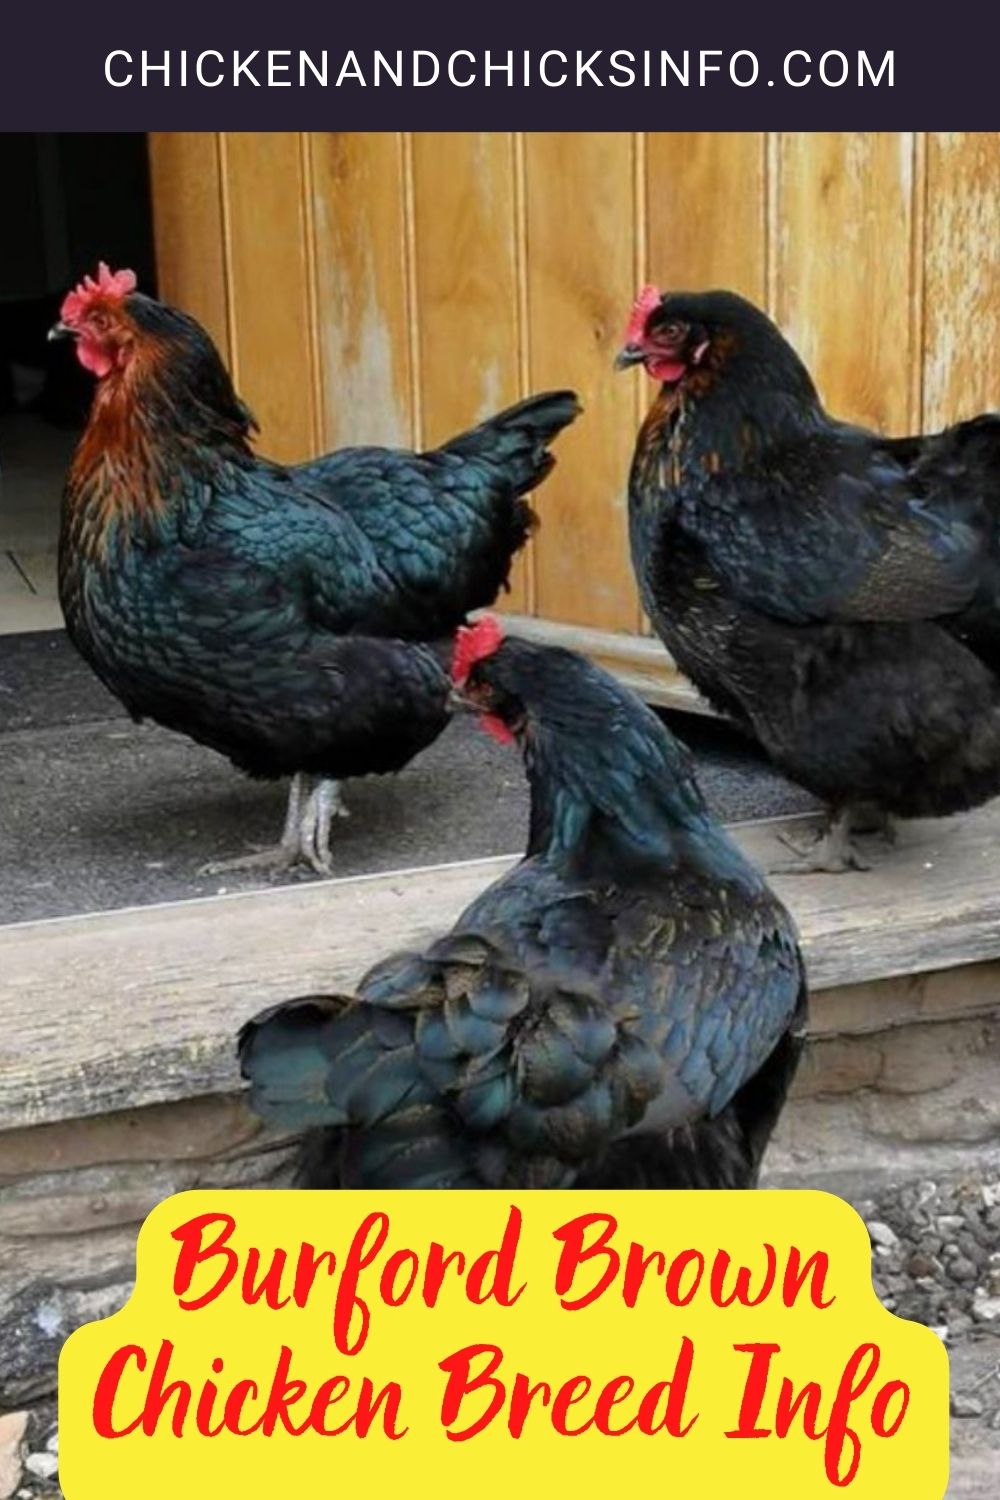 Burford Brown Chicken Breed Info pinterest image.